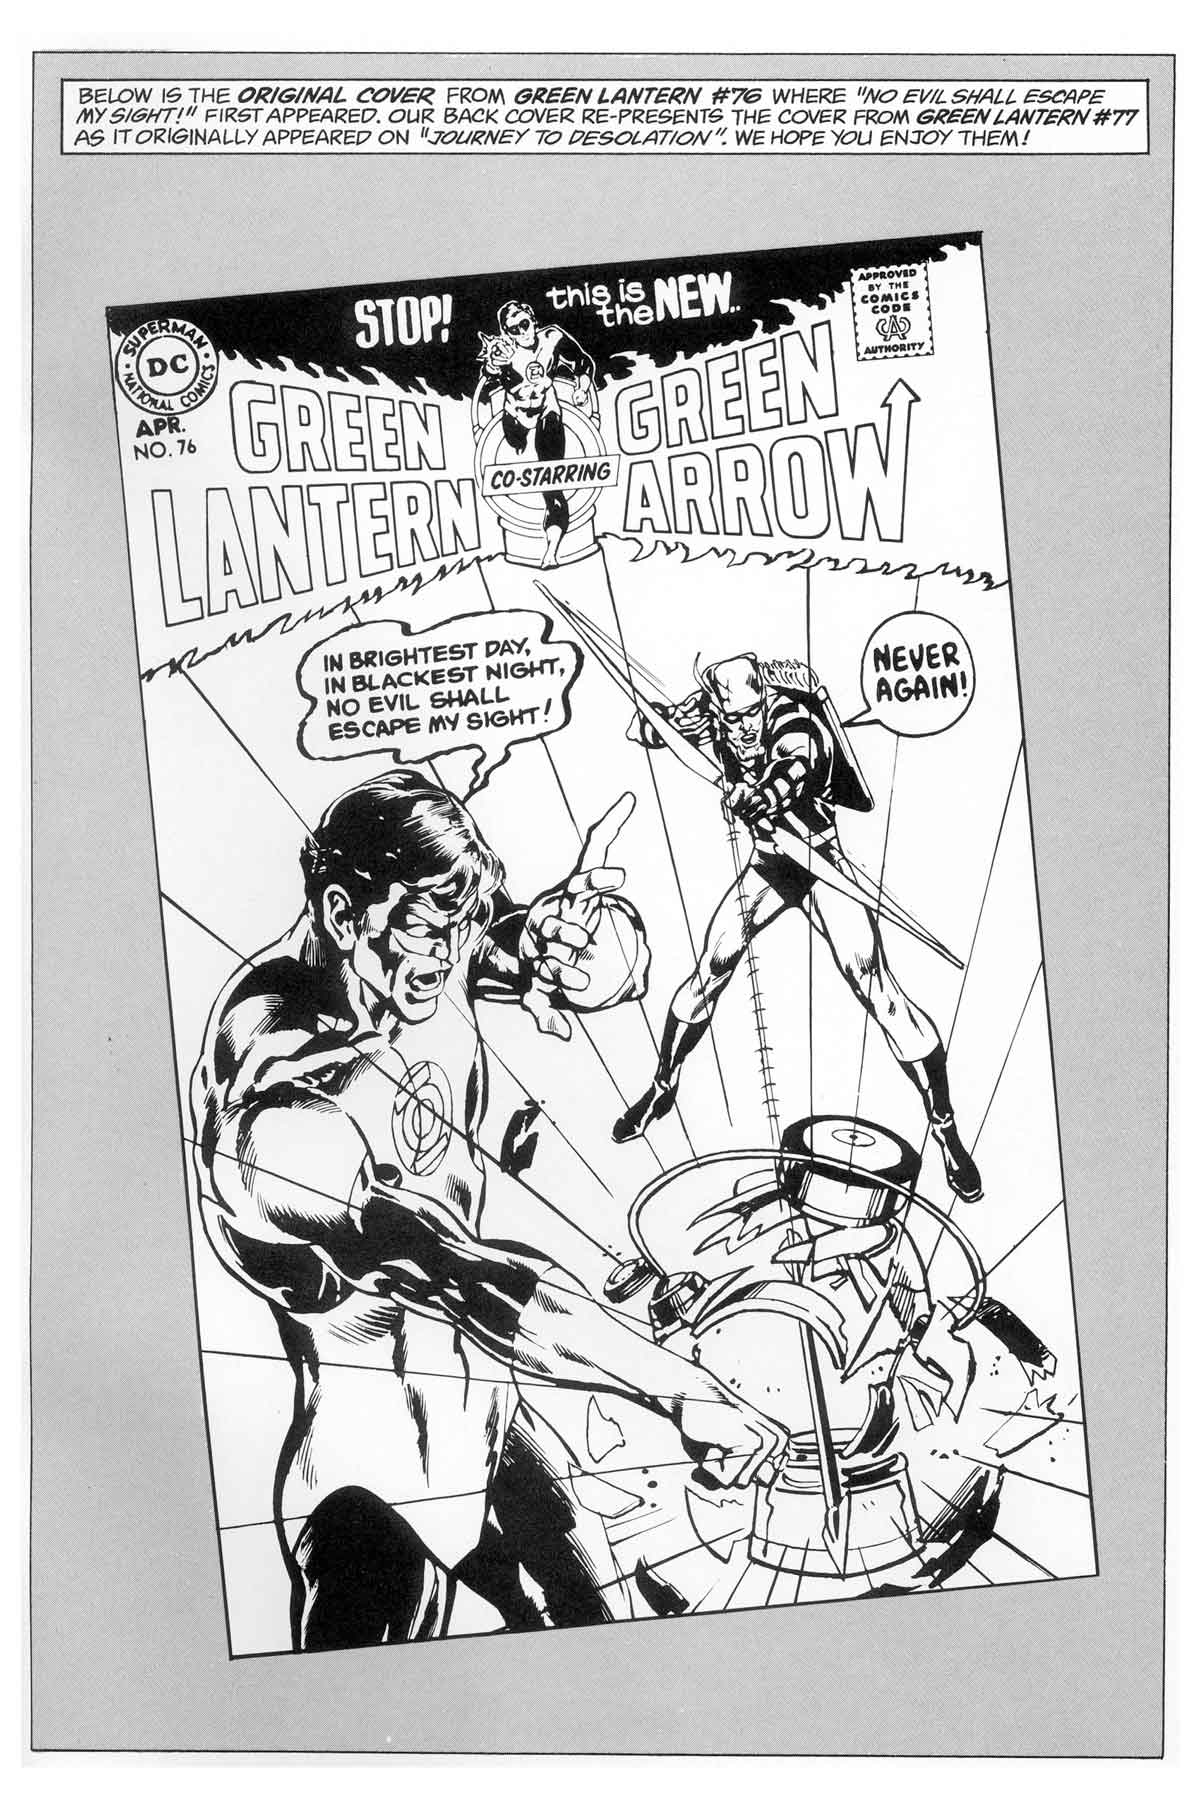 Read online Green Lantern/Green Arrow comic -  Issue #1 - 50